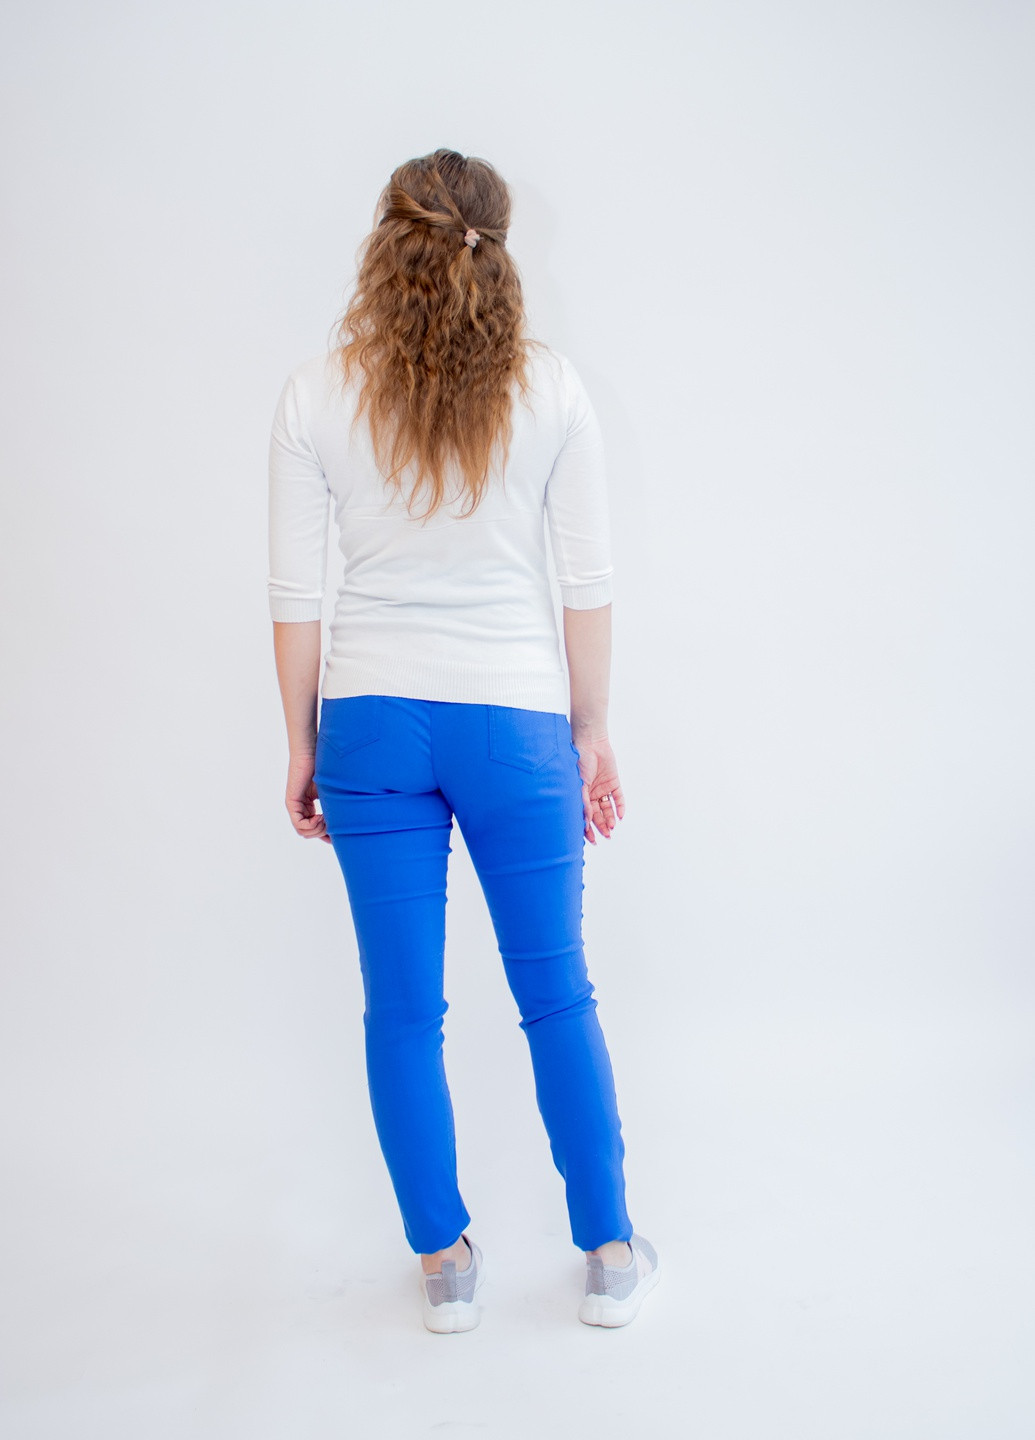 Голубые летние джеггинсы джинсы для беременных premom s голубые (42-44) Makosh.top